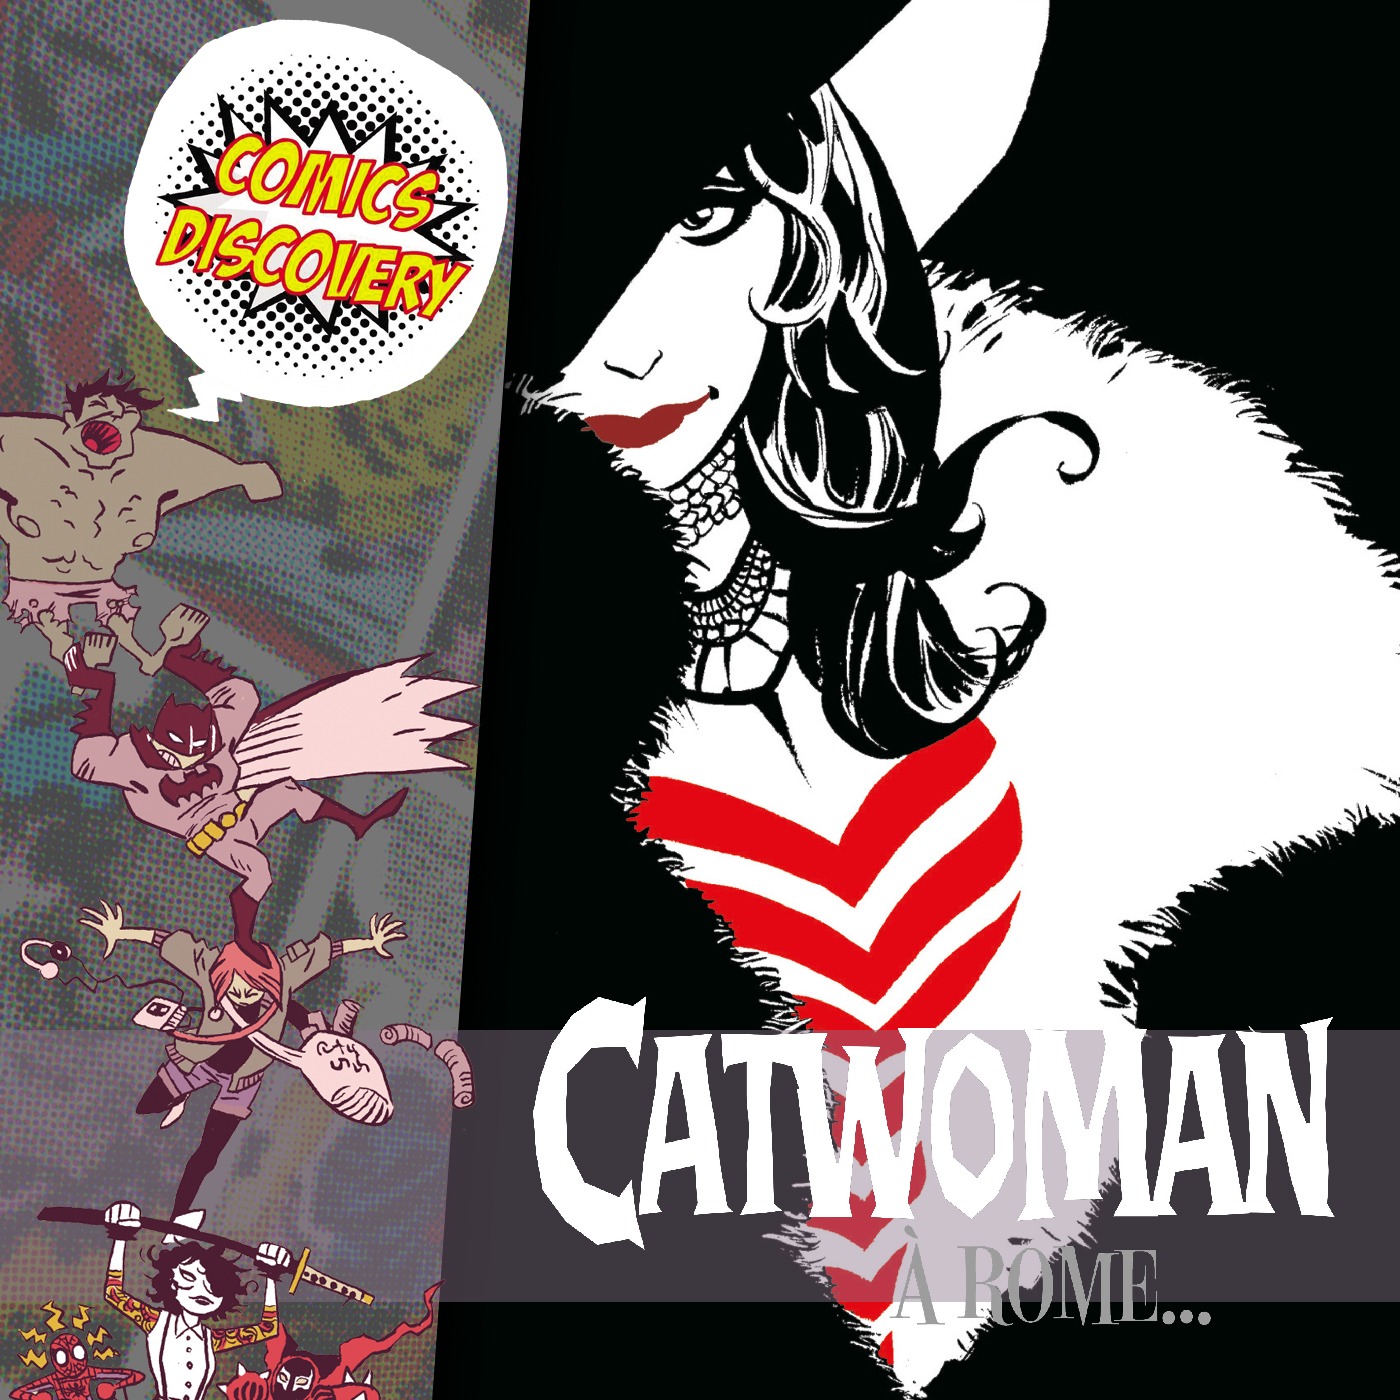 ComicsDiscovery S06E19 : Catwoman a Rome